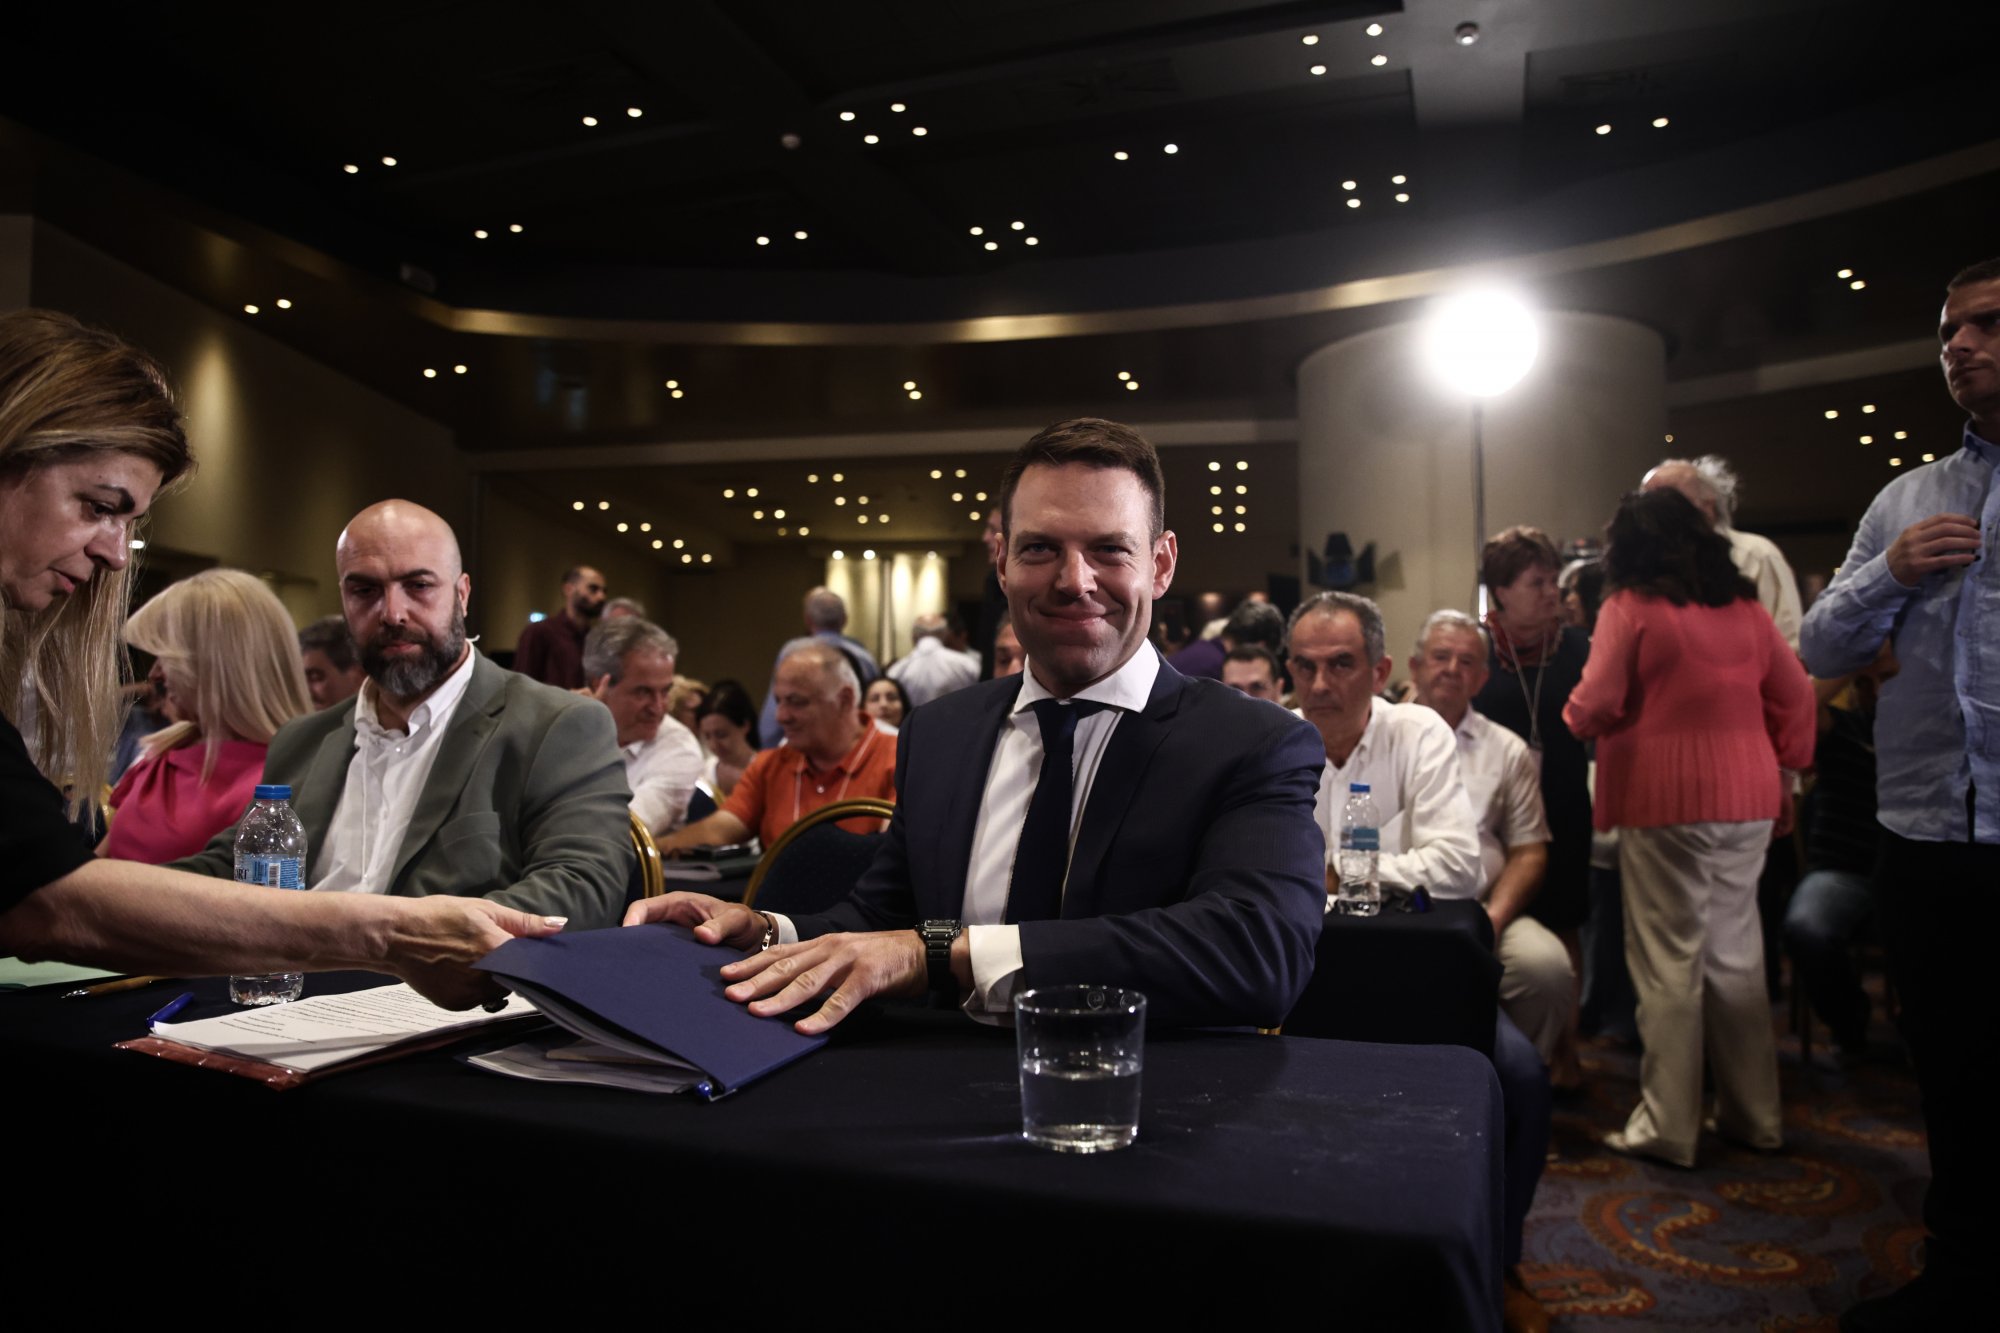 Συνεχίζονται οι «μετασεισμοί» στον ΣΥΡΙΖΑ μετά την αποχώρηση Δραγασάκη - Νέες αναταράξεις εν μέσω γκρίνιας για τα οικονομικά